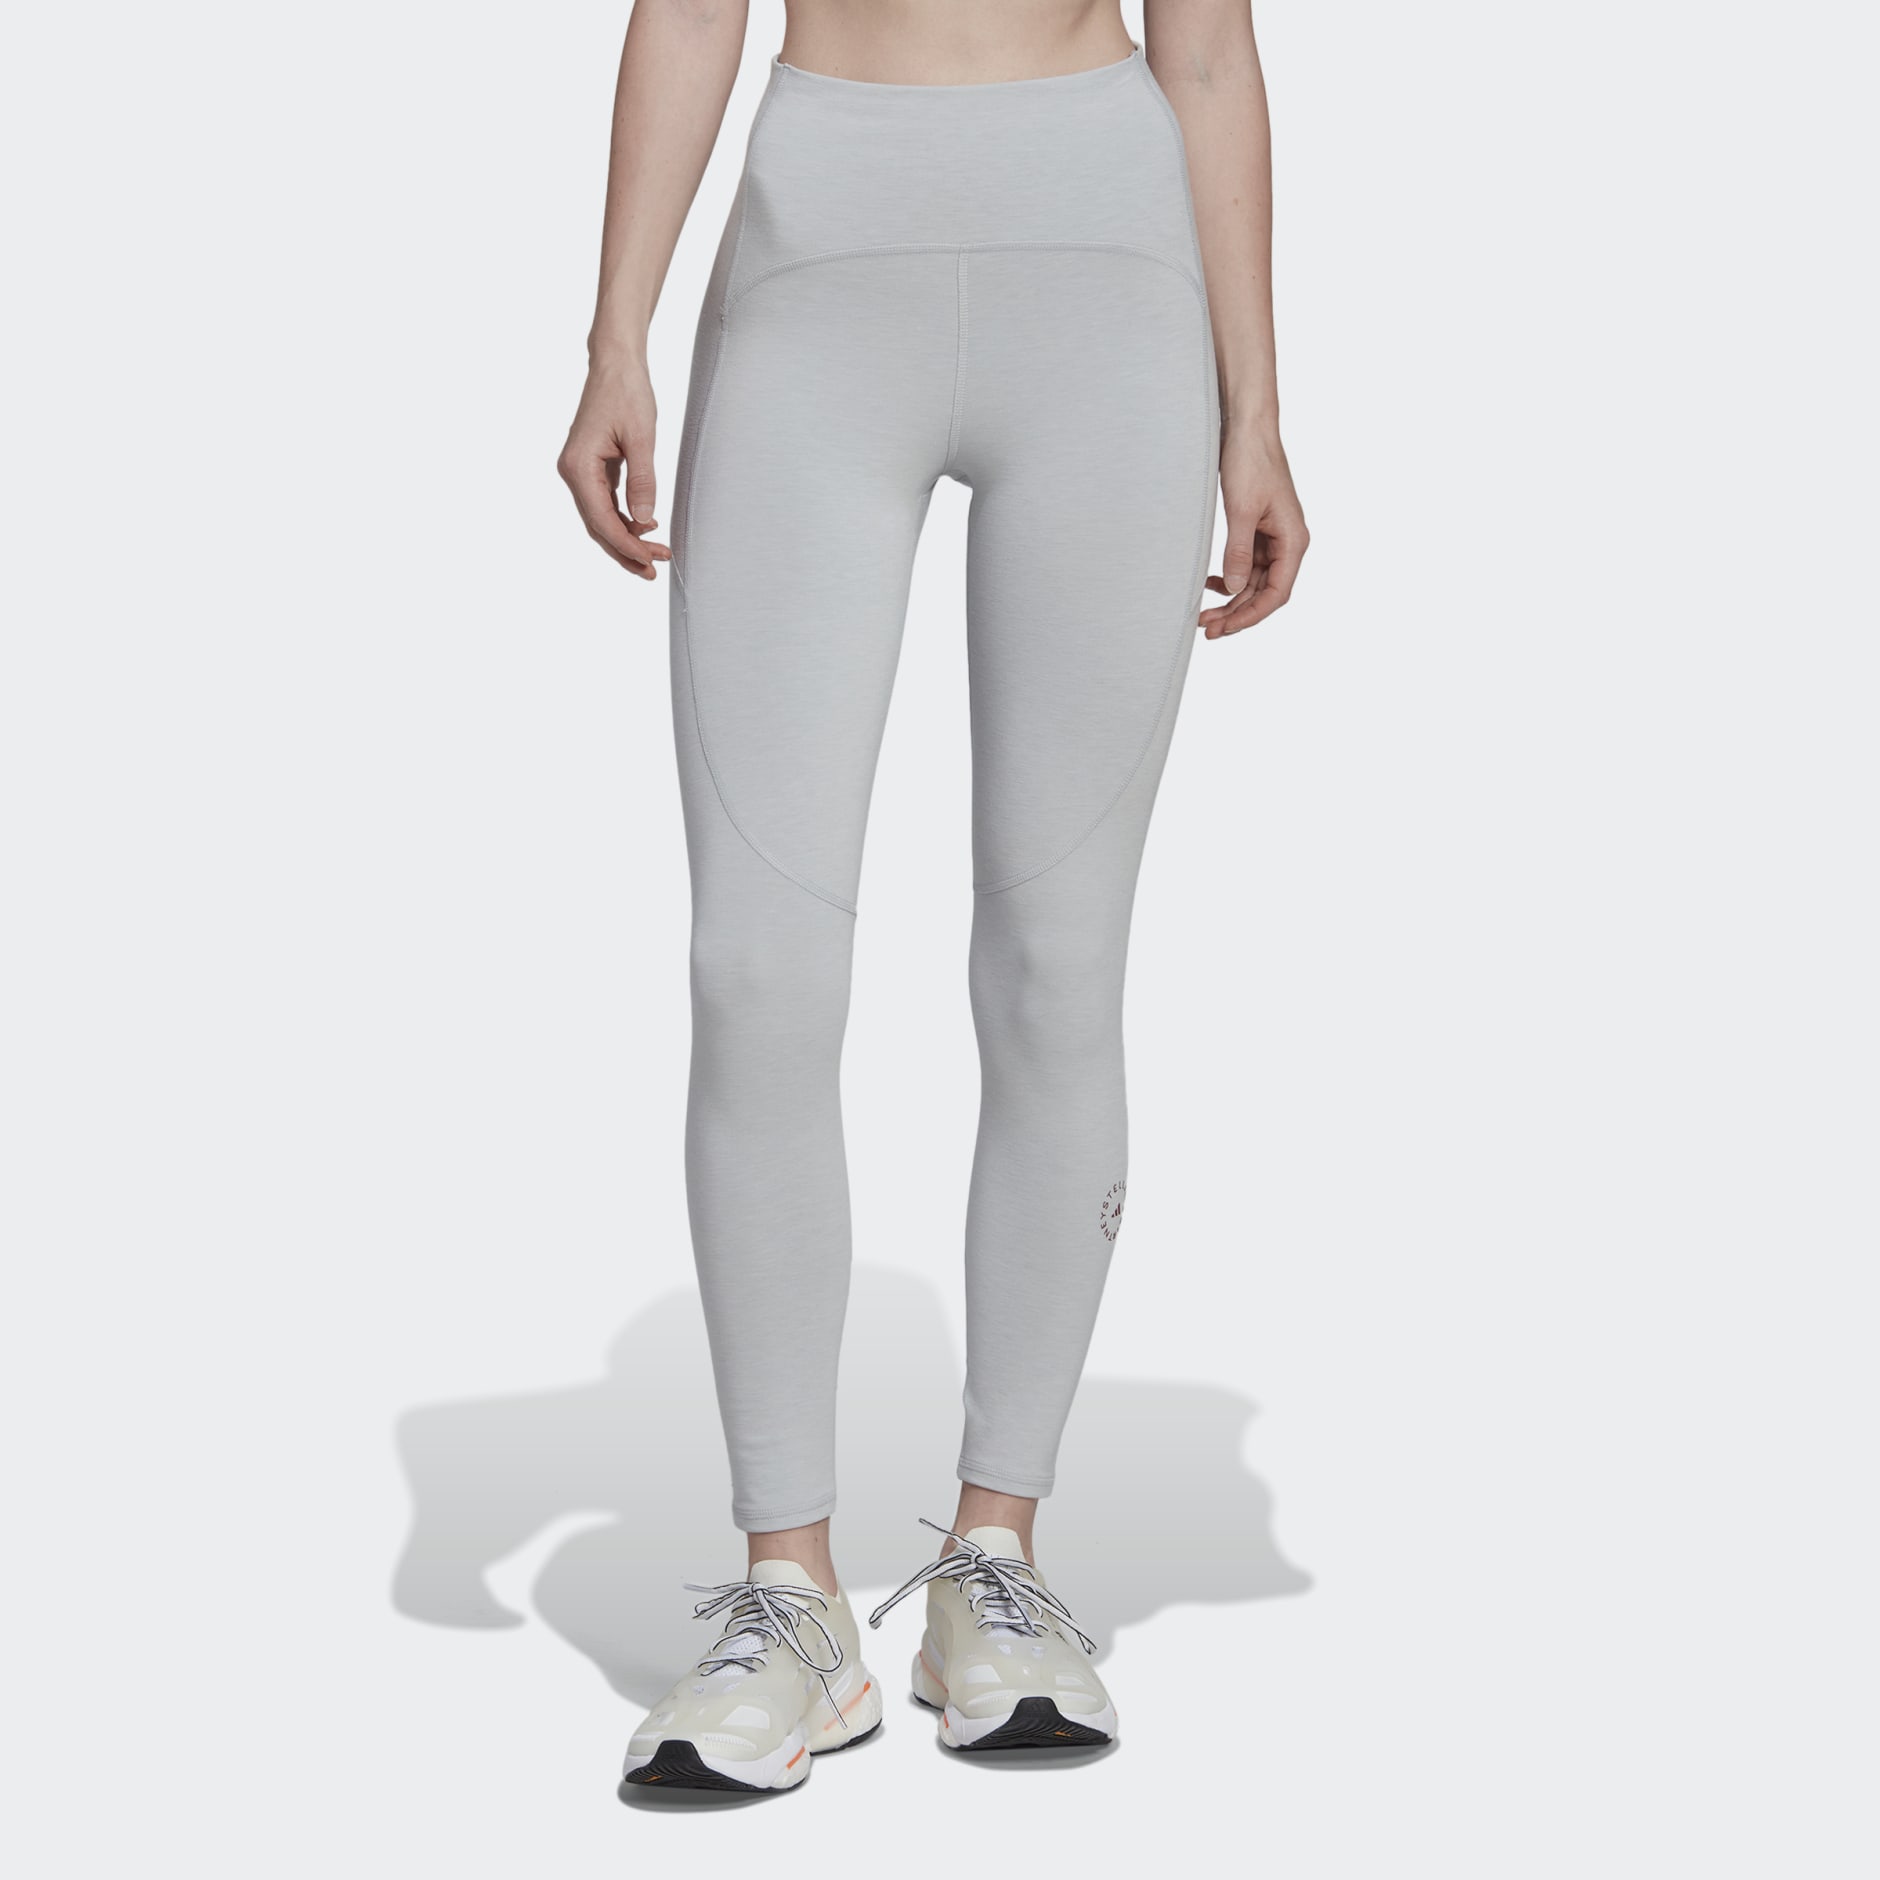 Clothing - adidas by Stella McCartney 7/8 Yoga Leggings - Grey